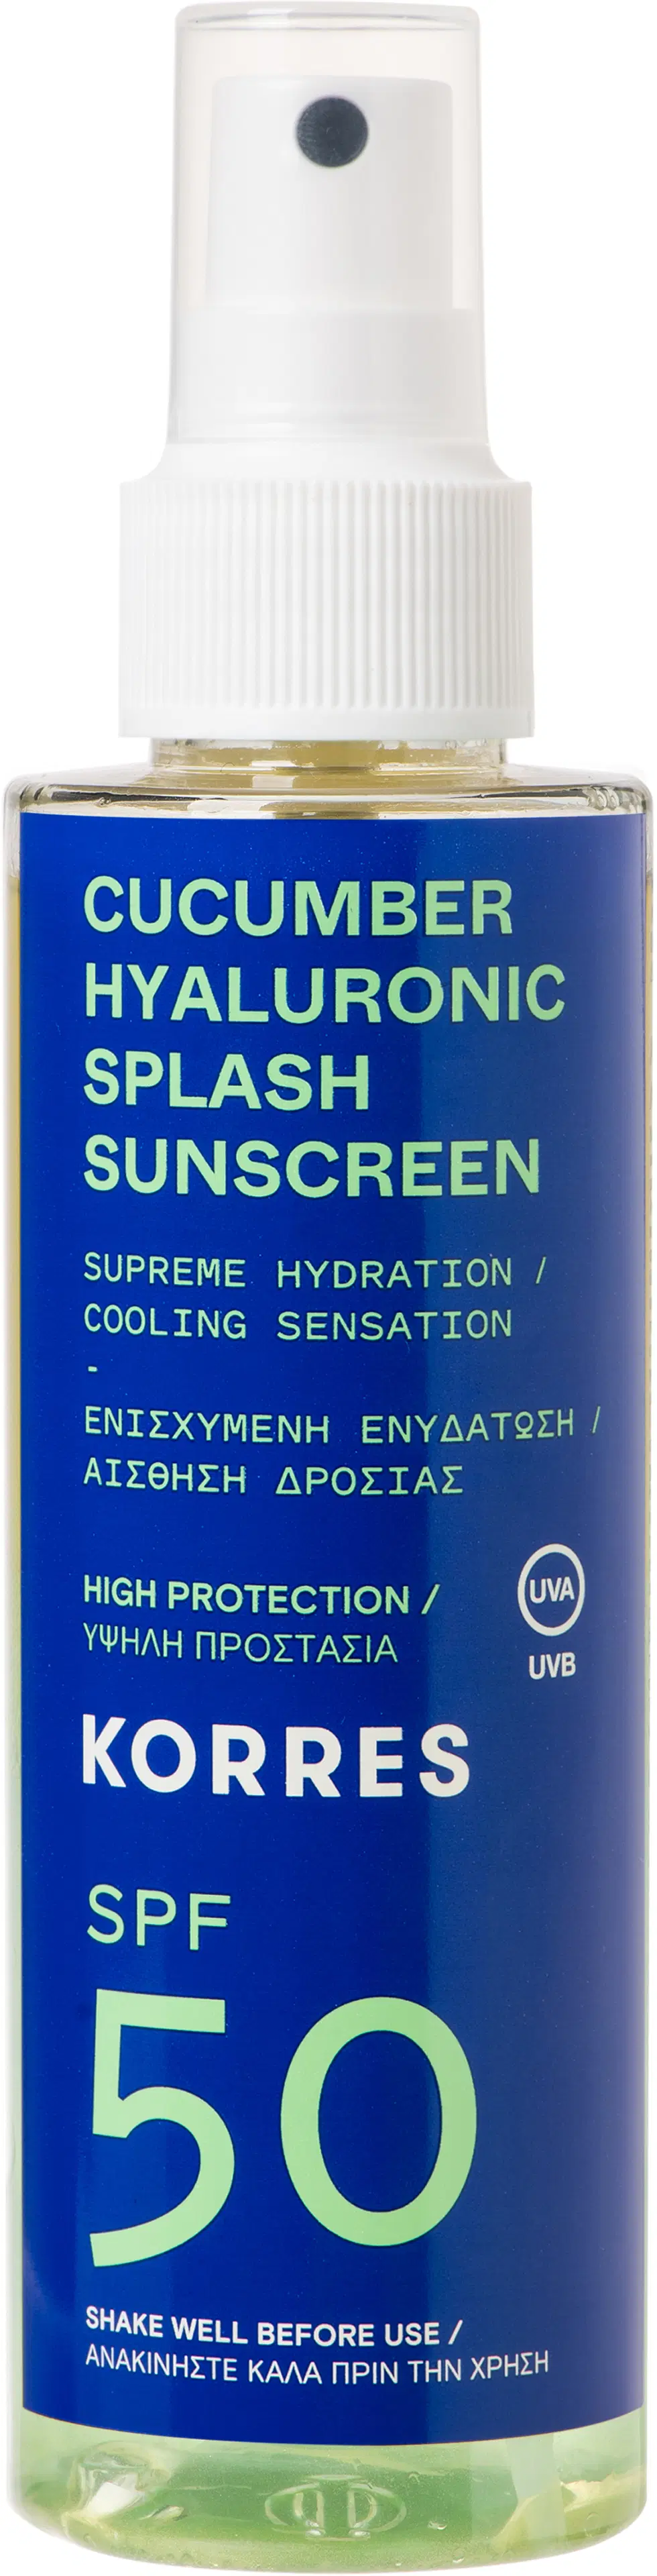 KORRES Cucumber Hyaluronic SPF50 aurinkosuojavesi kasvoille ja vartalolle 150 ml